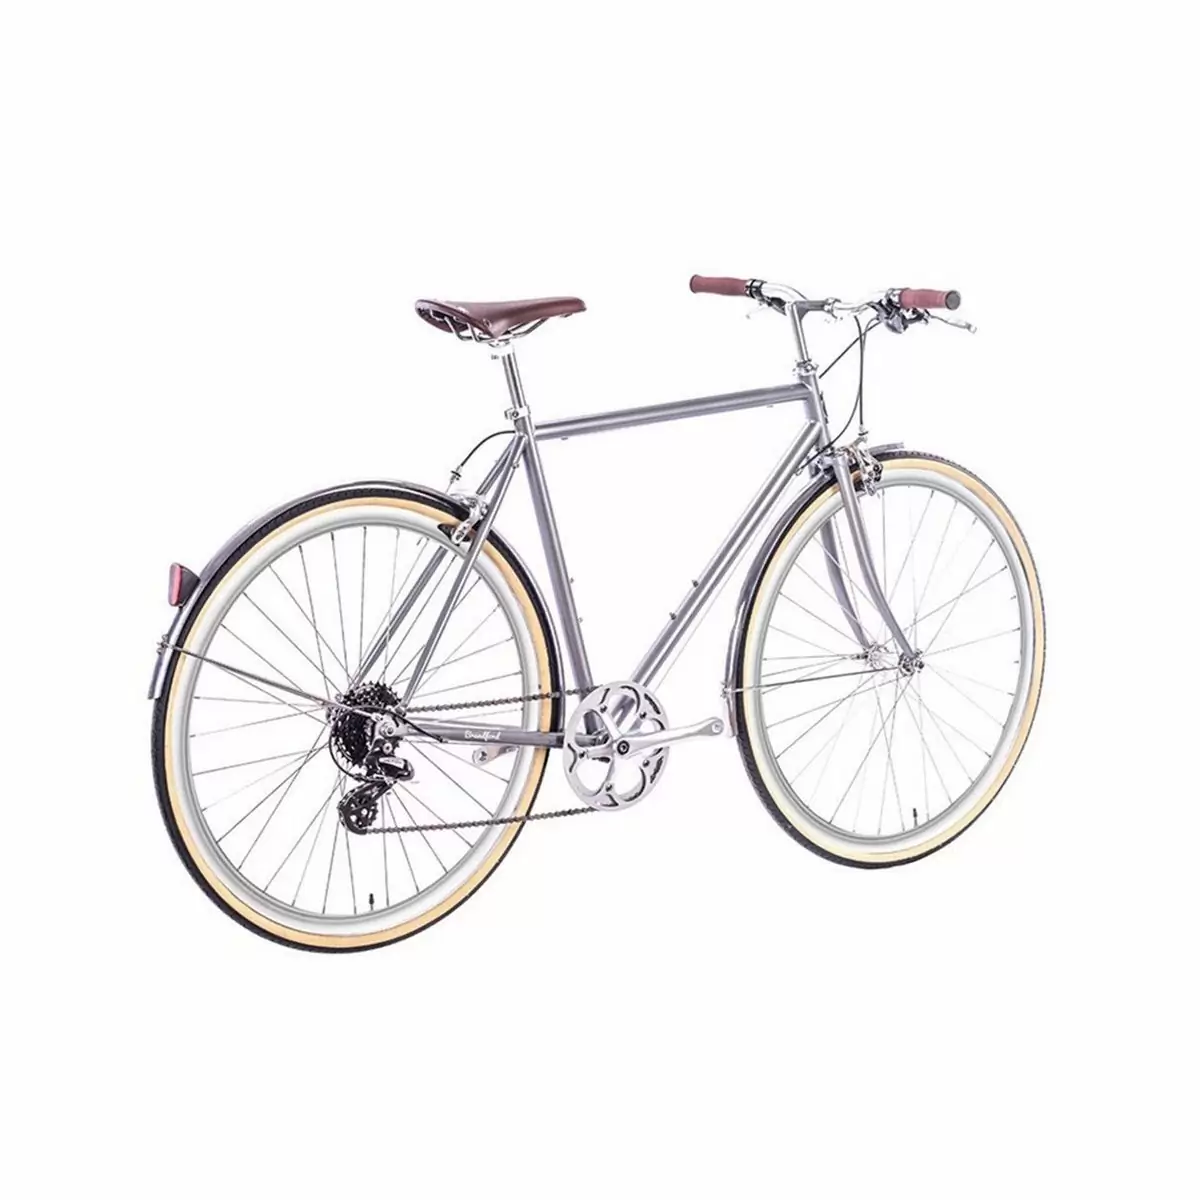 Bicicleta urbana ODYSSEY 8spd Brandford prata média 54cm #2